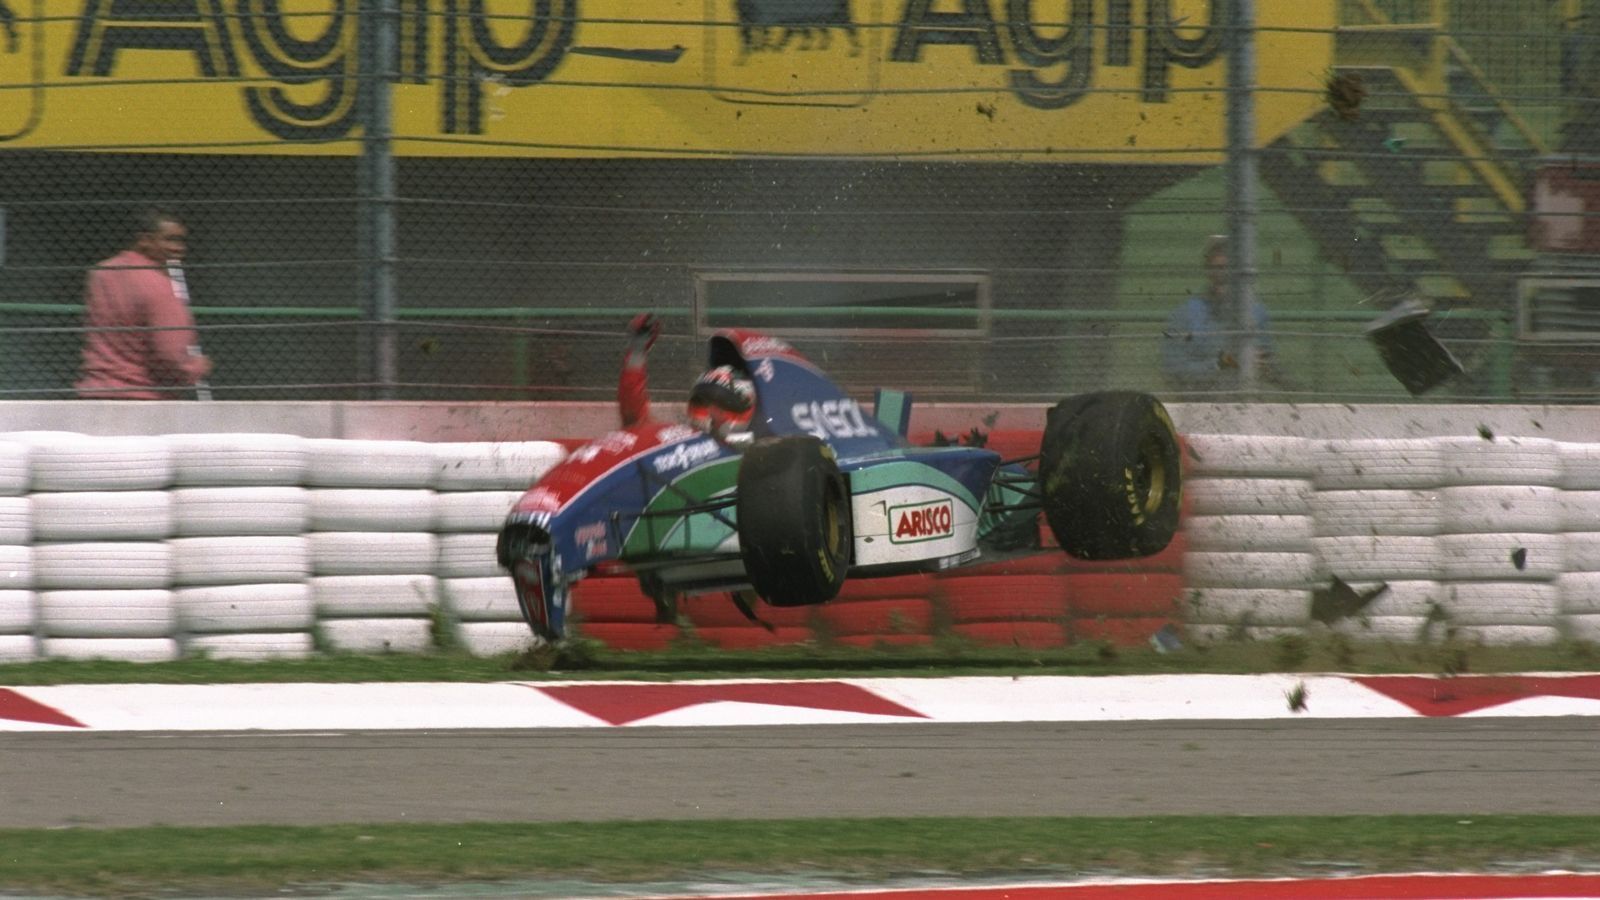 
                <strong>Ayrton Senna: Als die Formel 1 ihre Seele verlor</strong><br>
                Am Freitag, dem 29. April 1994, zunächst der Horrorcrash von Rubens Barrichello im Training, den er fast verletzungsfrei überlebt. Damon Hill meint später: "Wir alle machten weiter mit dem Qualifying, denn wir hatten ja gesehen, dass unsere Autos stark wie Panzer sind. Man konnte vielleicht durchgeschüttelt werden, sich aber nicht verletzen."
              